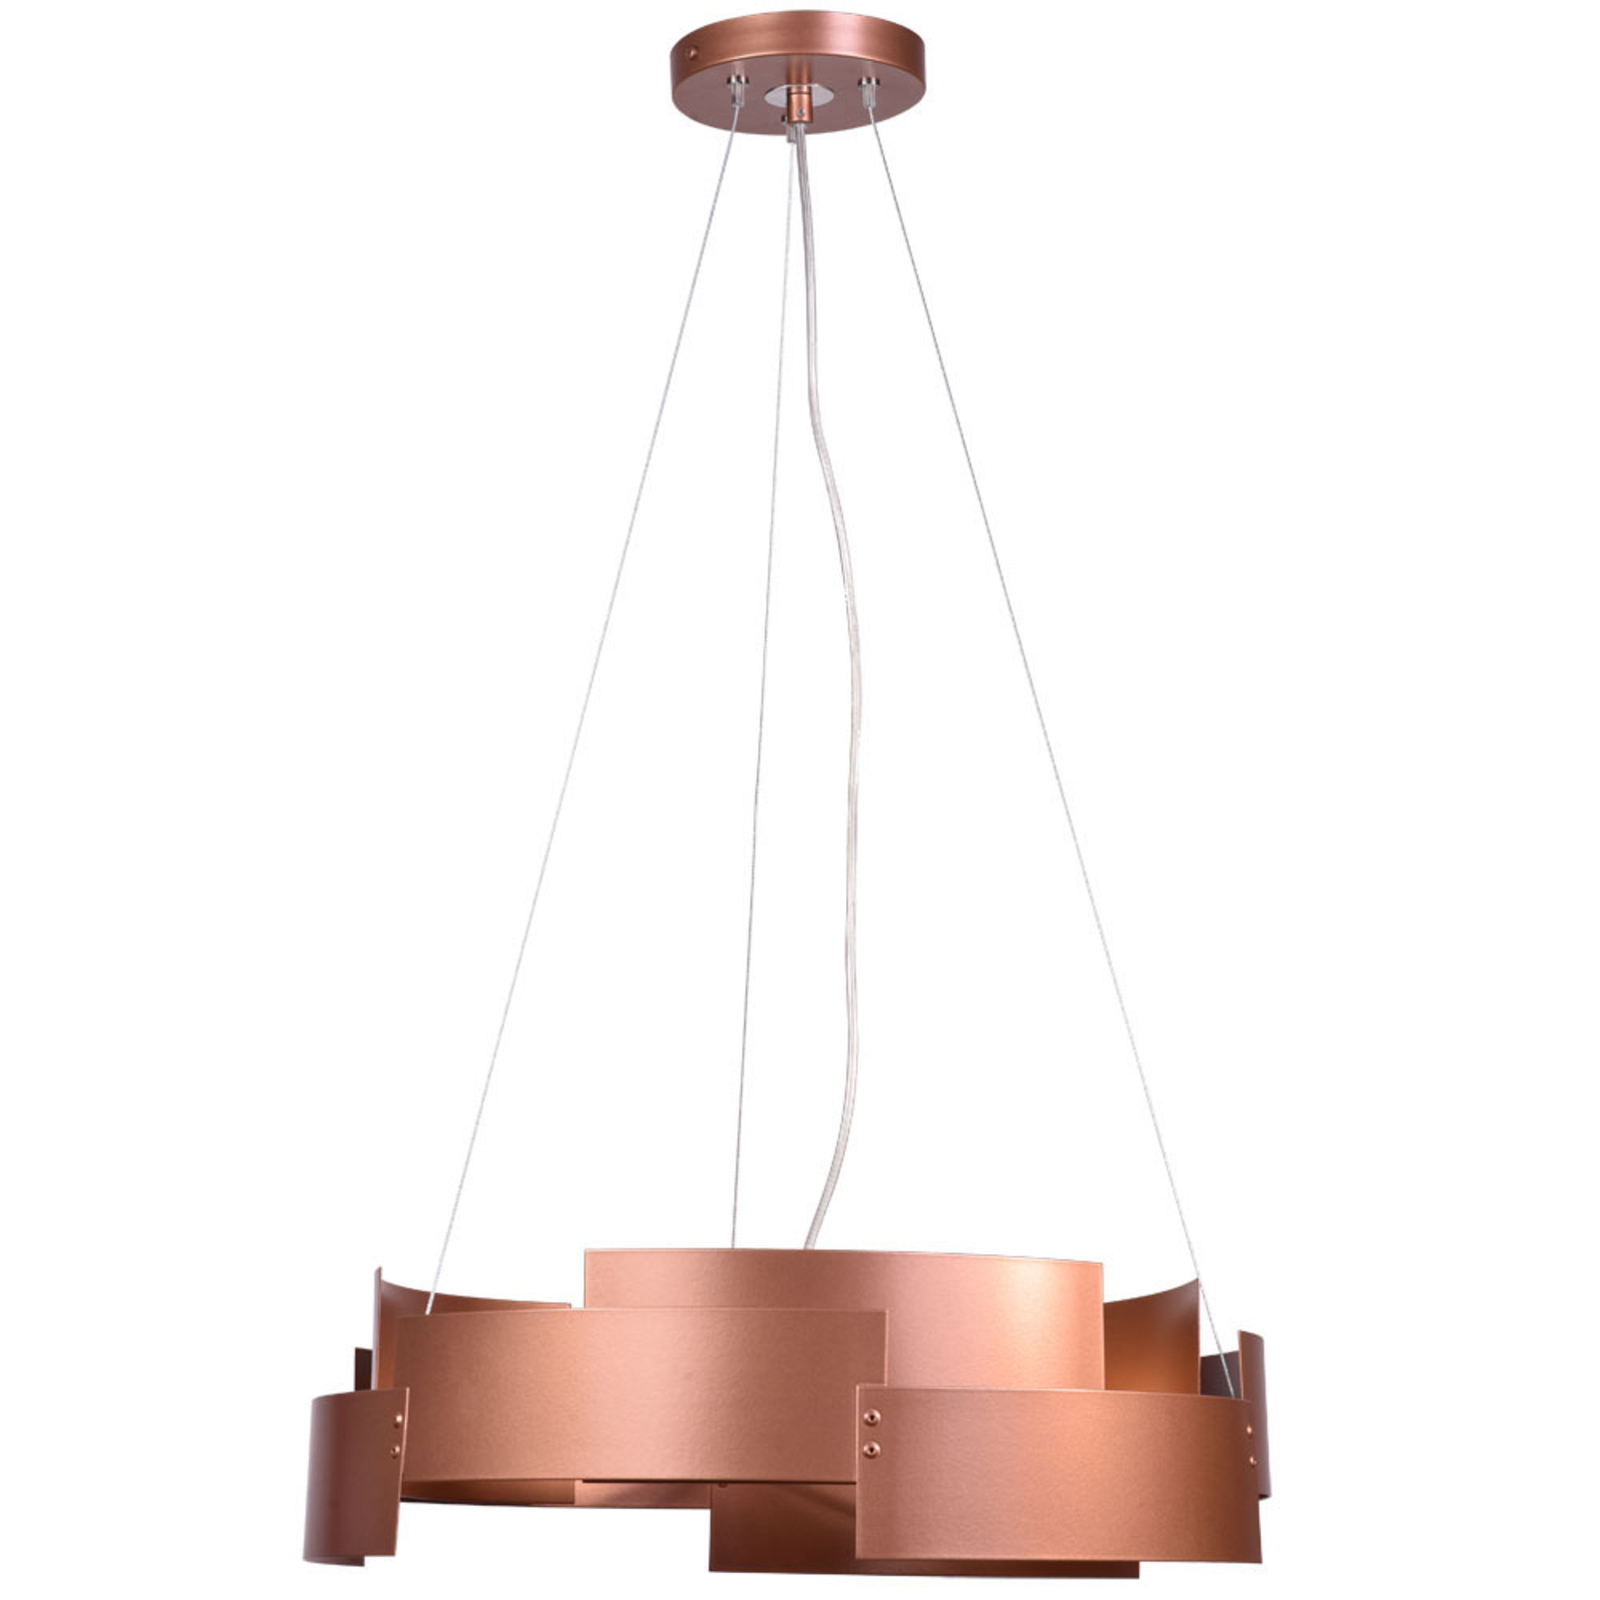 Tori pendant light, copper